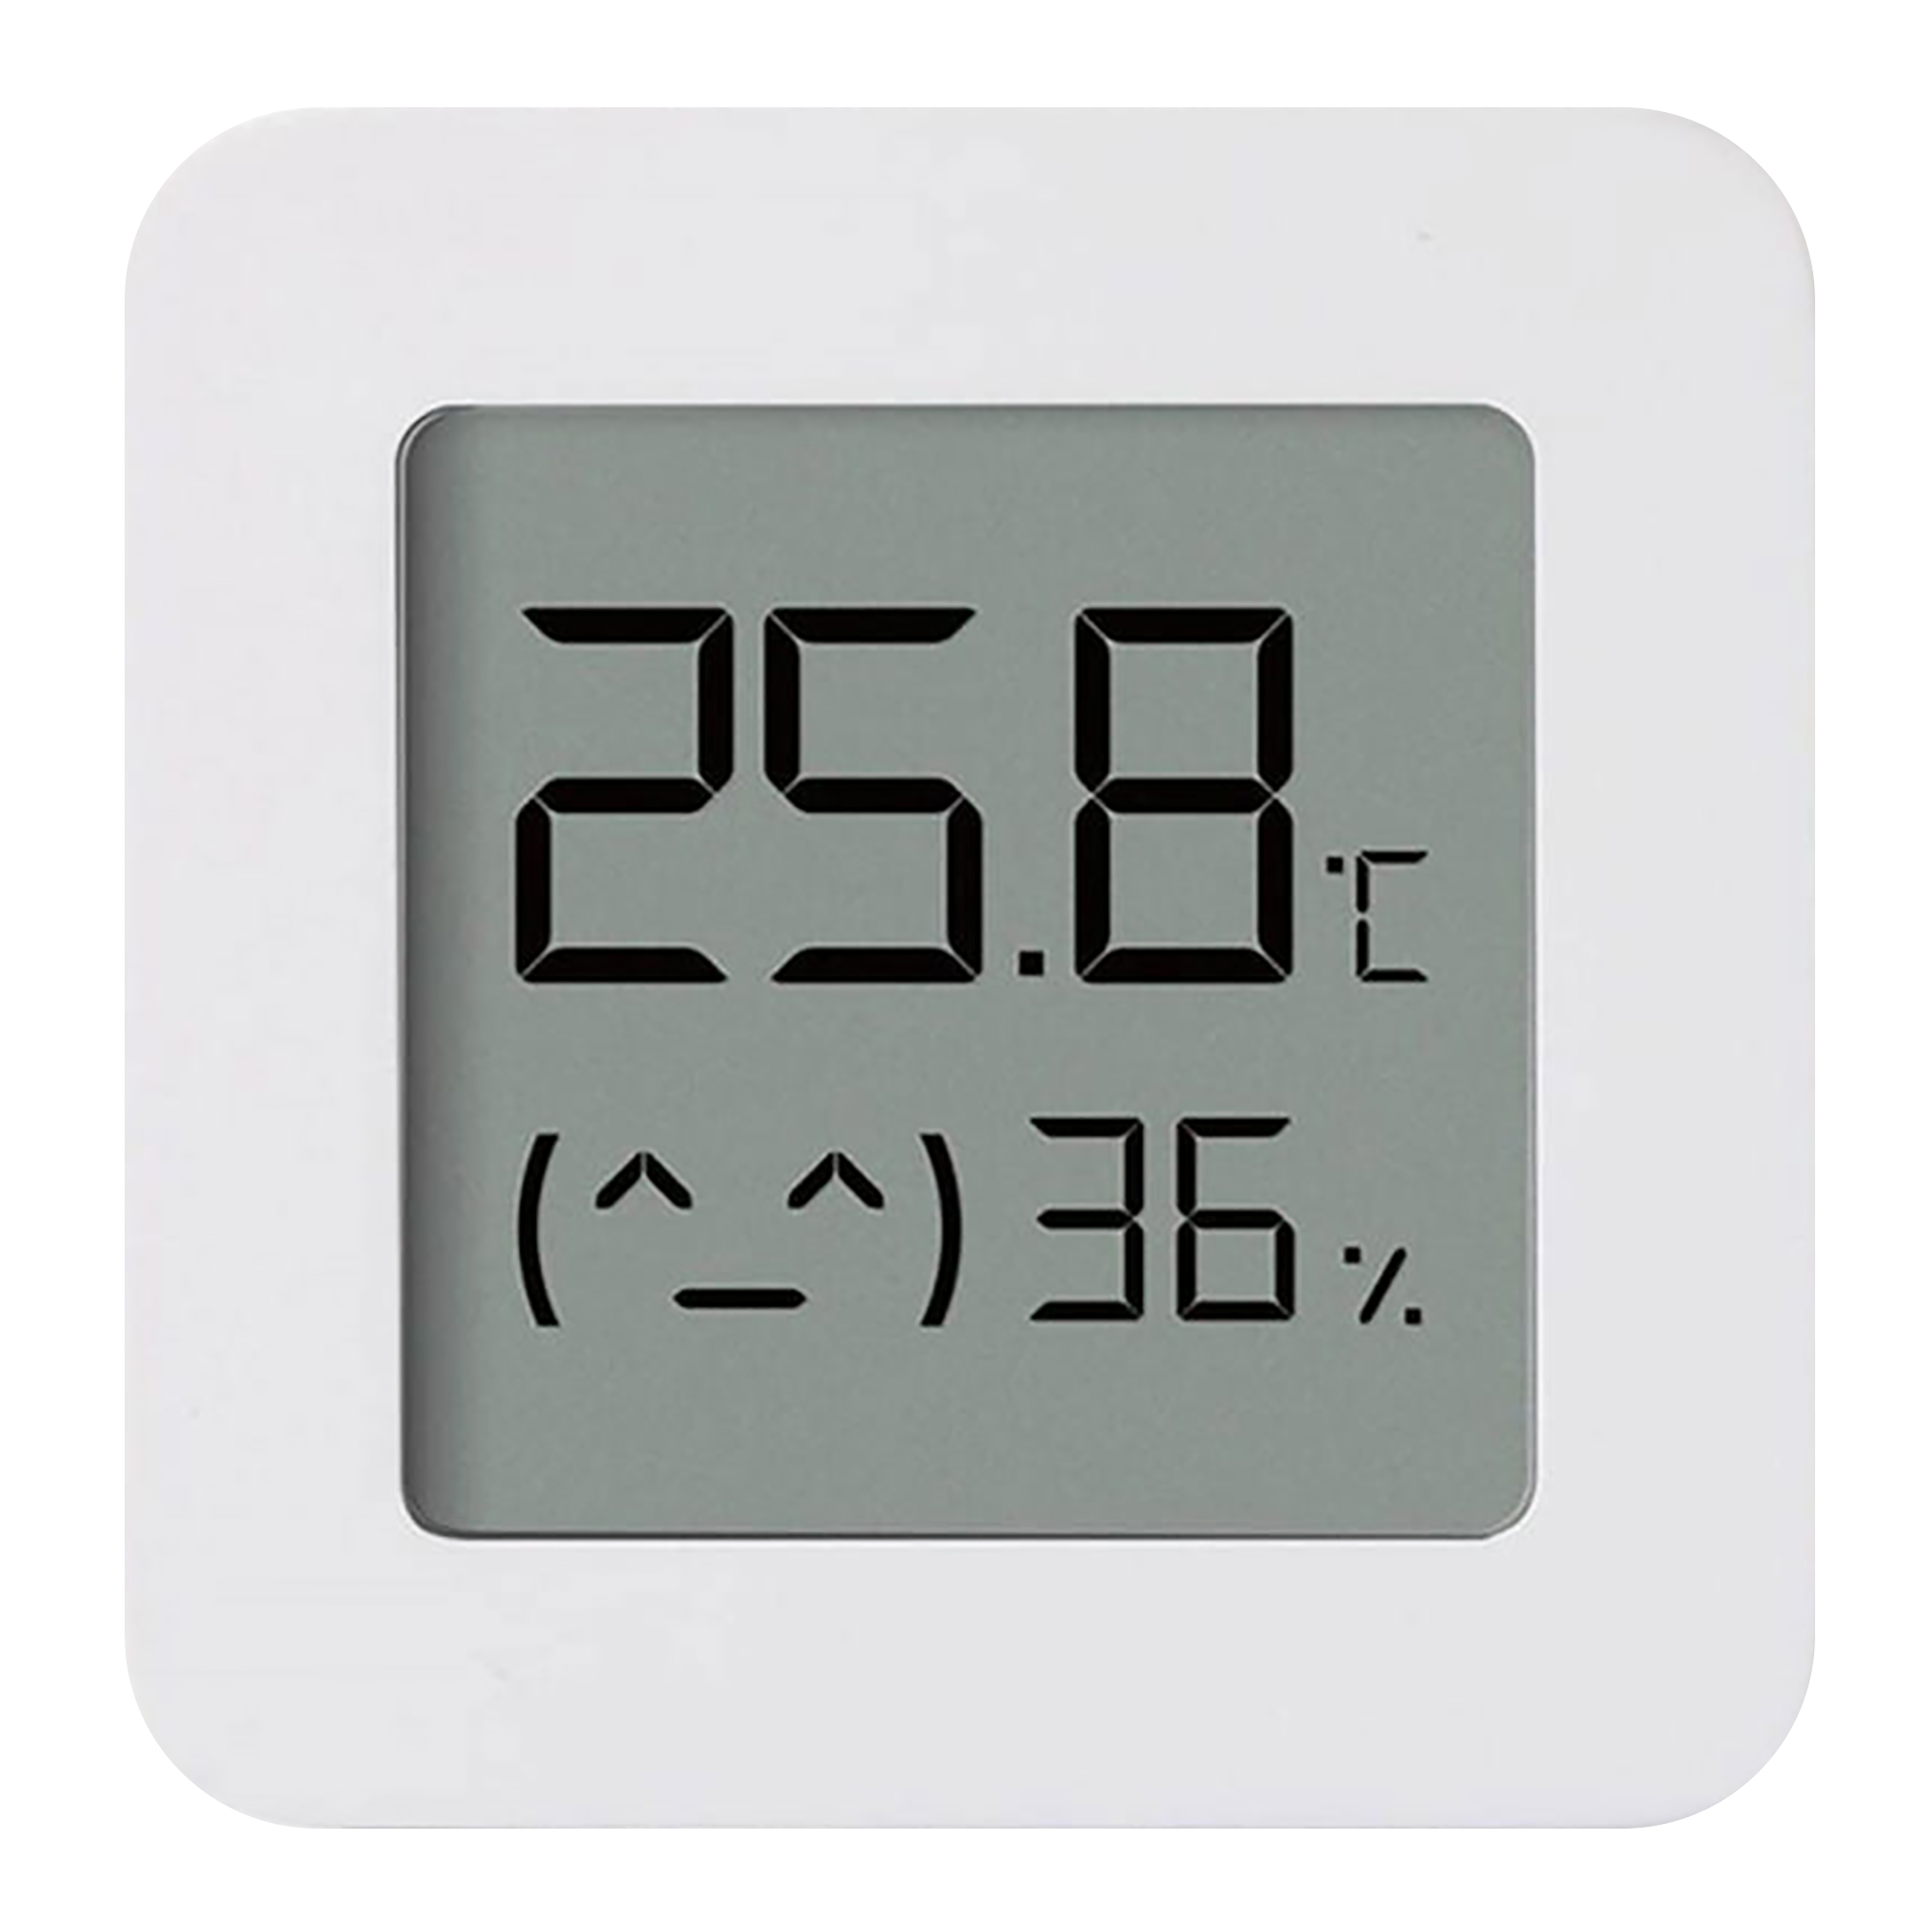 Sensor De Temperatura y Humedad Xiaomi 0c - 60c 0% - 99% Rh